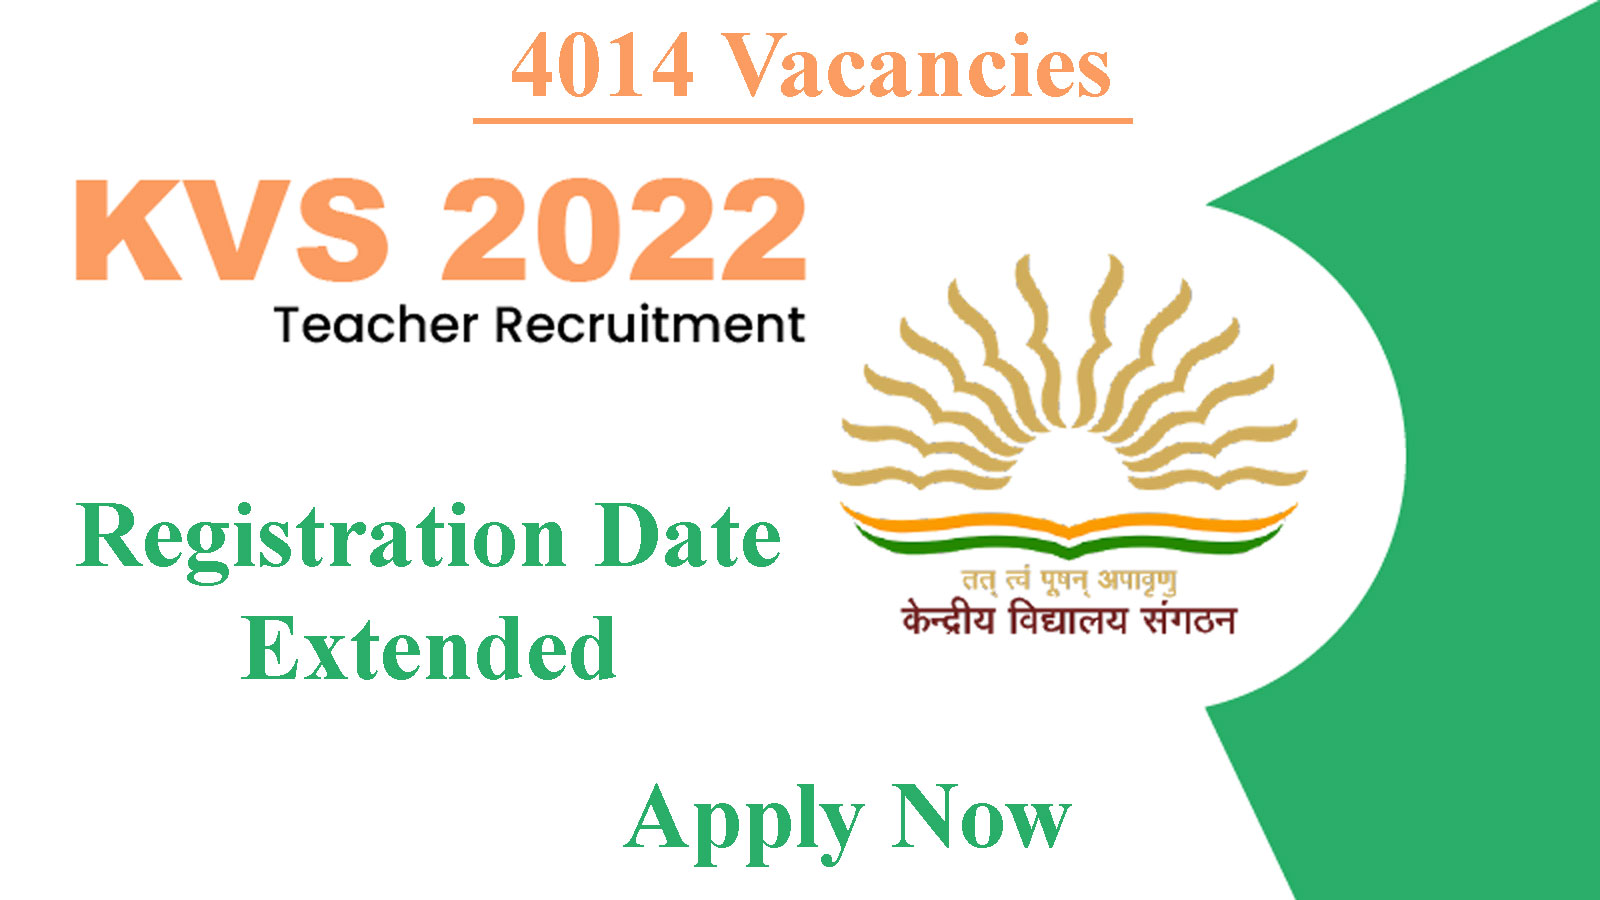 4014 posts | KVS Teacher Recruitment 2022, last date extended